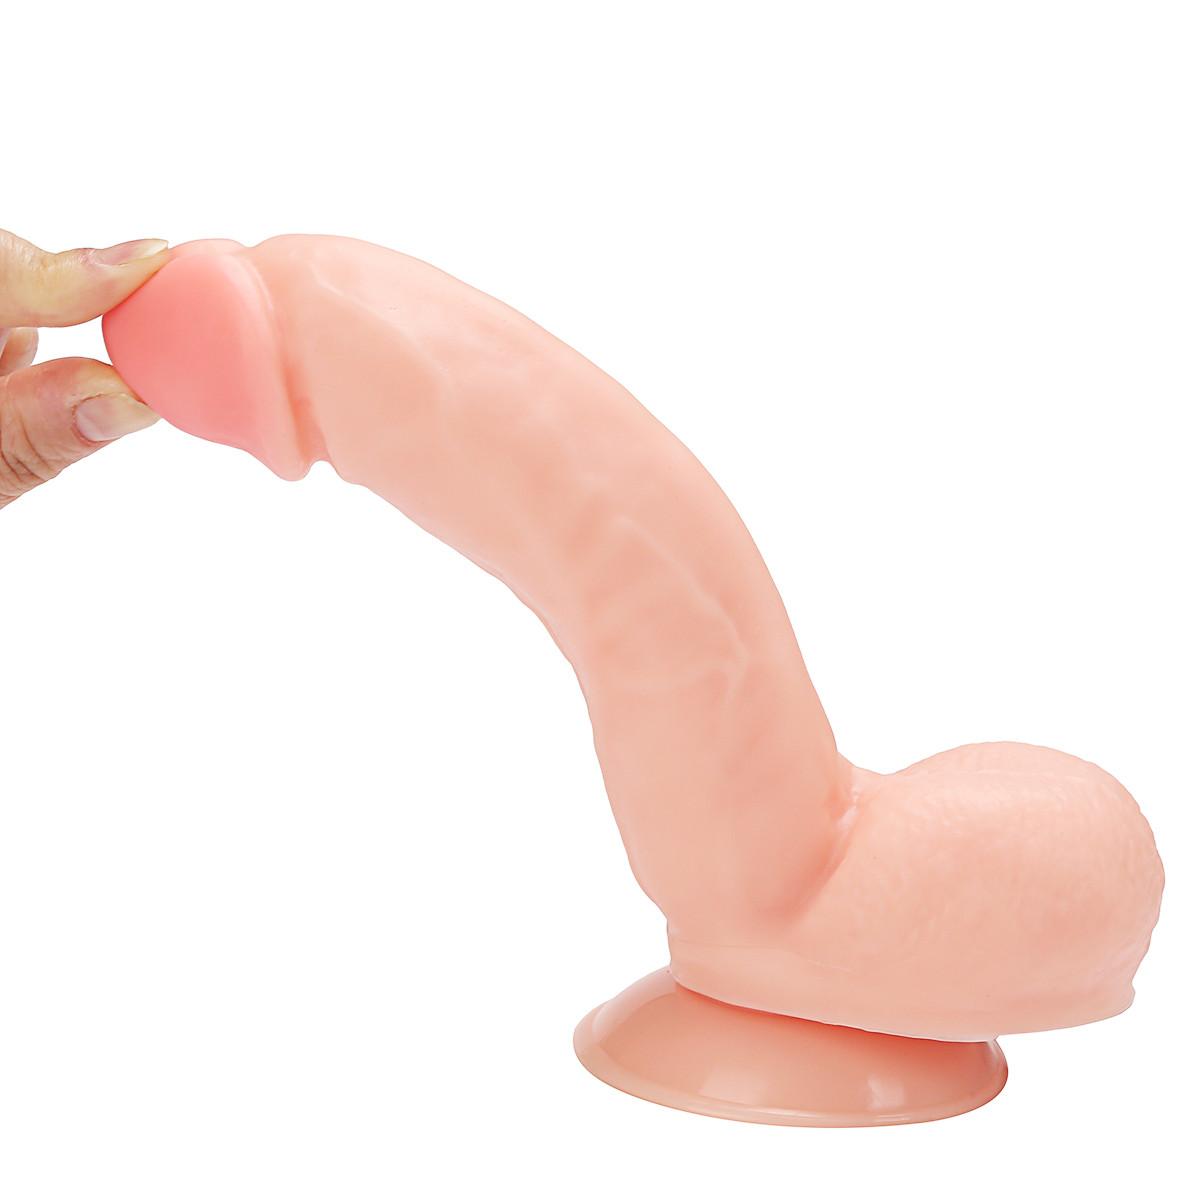 Large manual artificial penis simulation penis, female masturbation artifact wl269